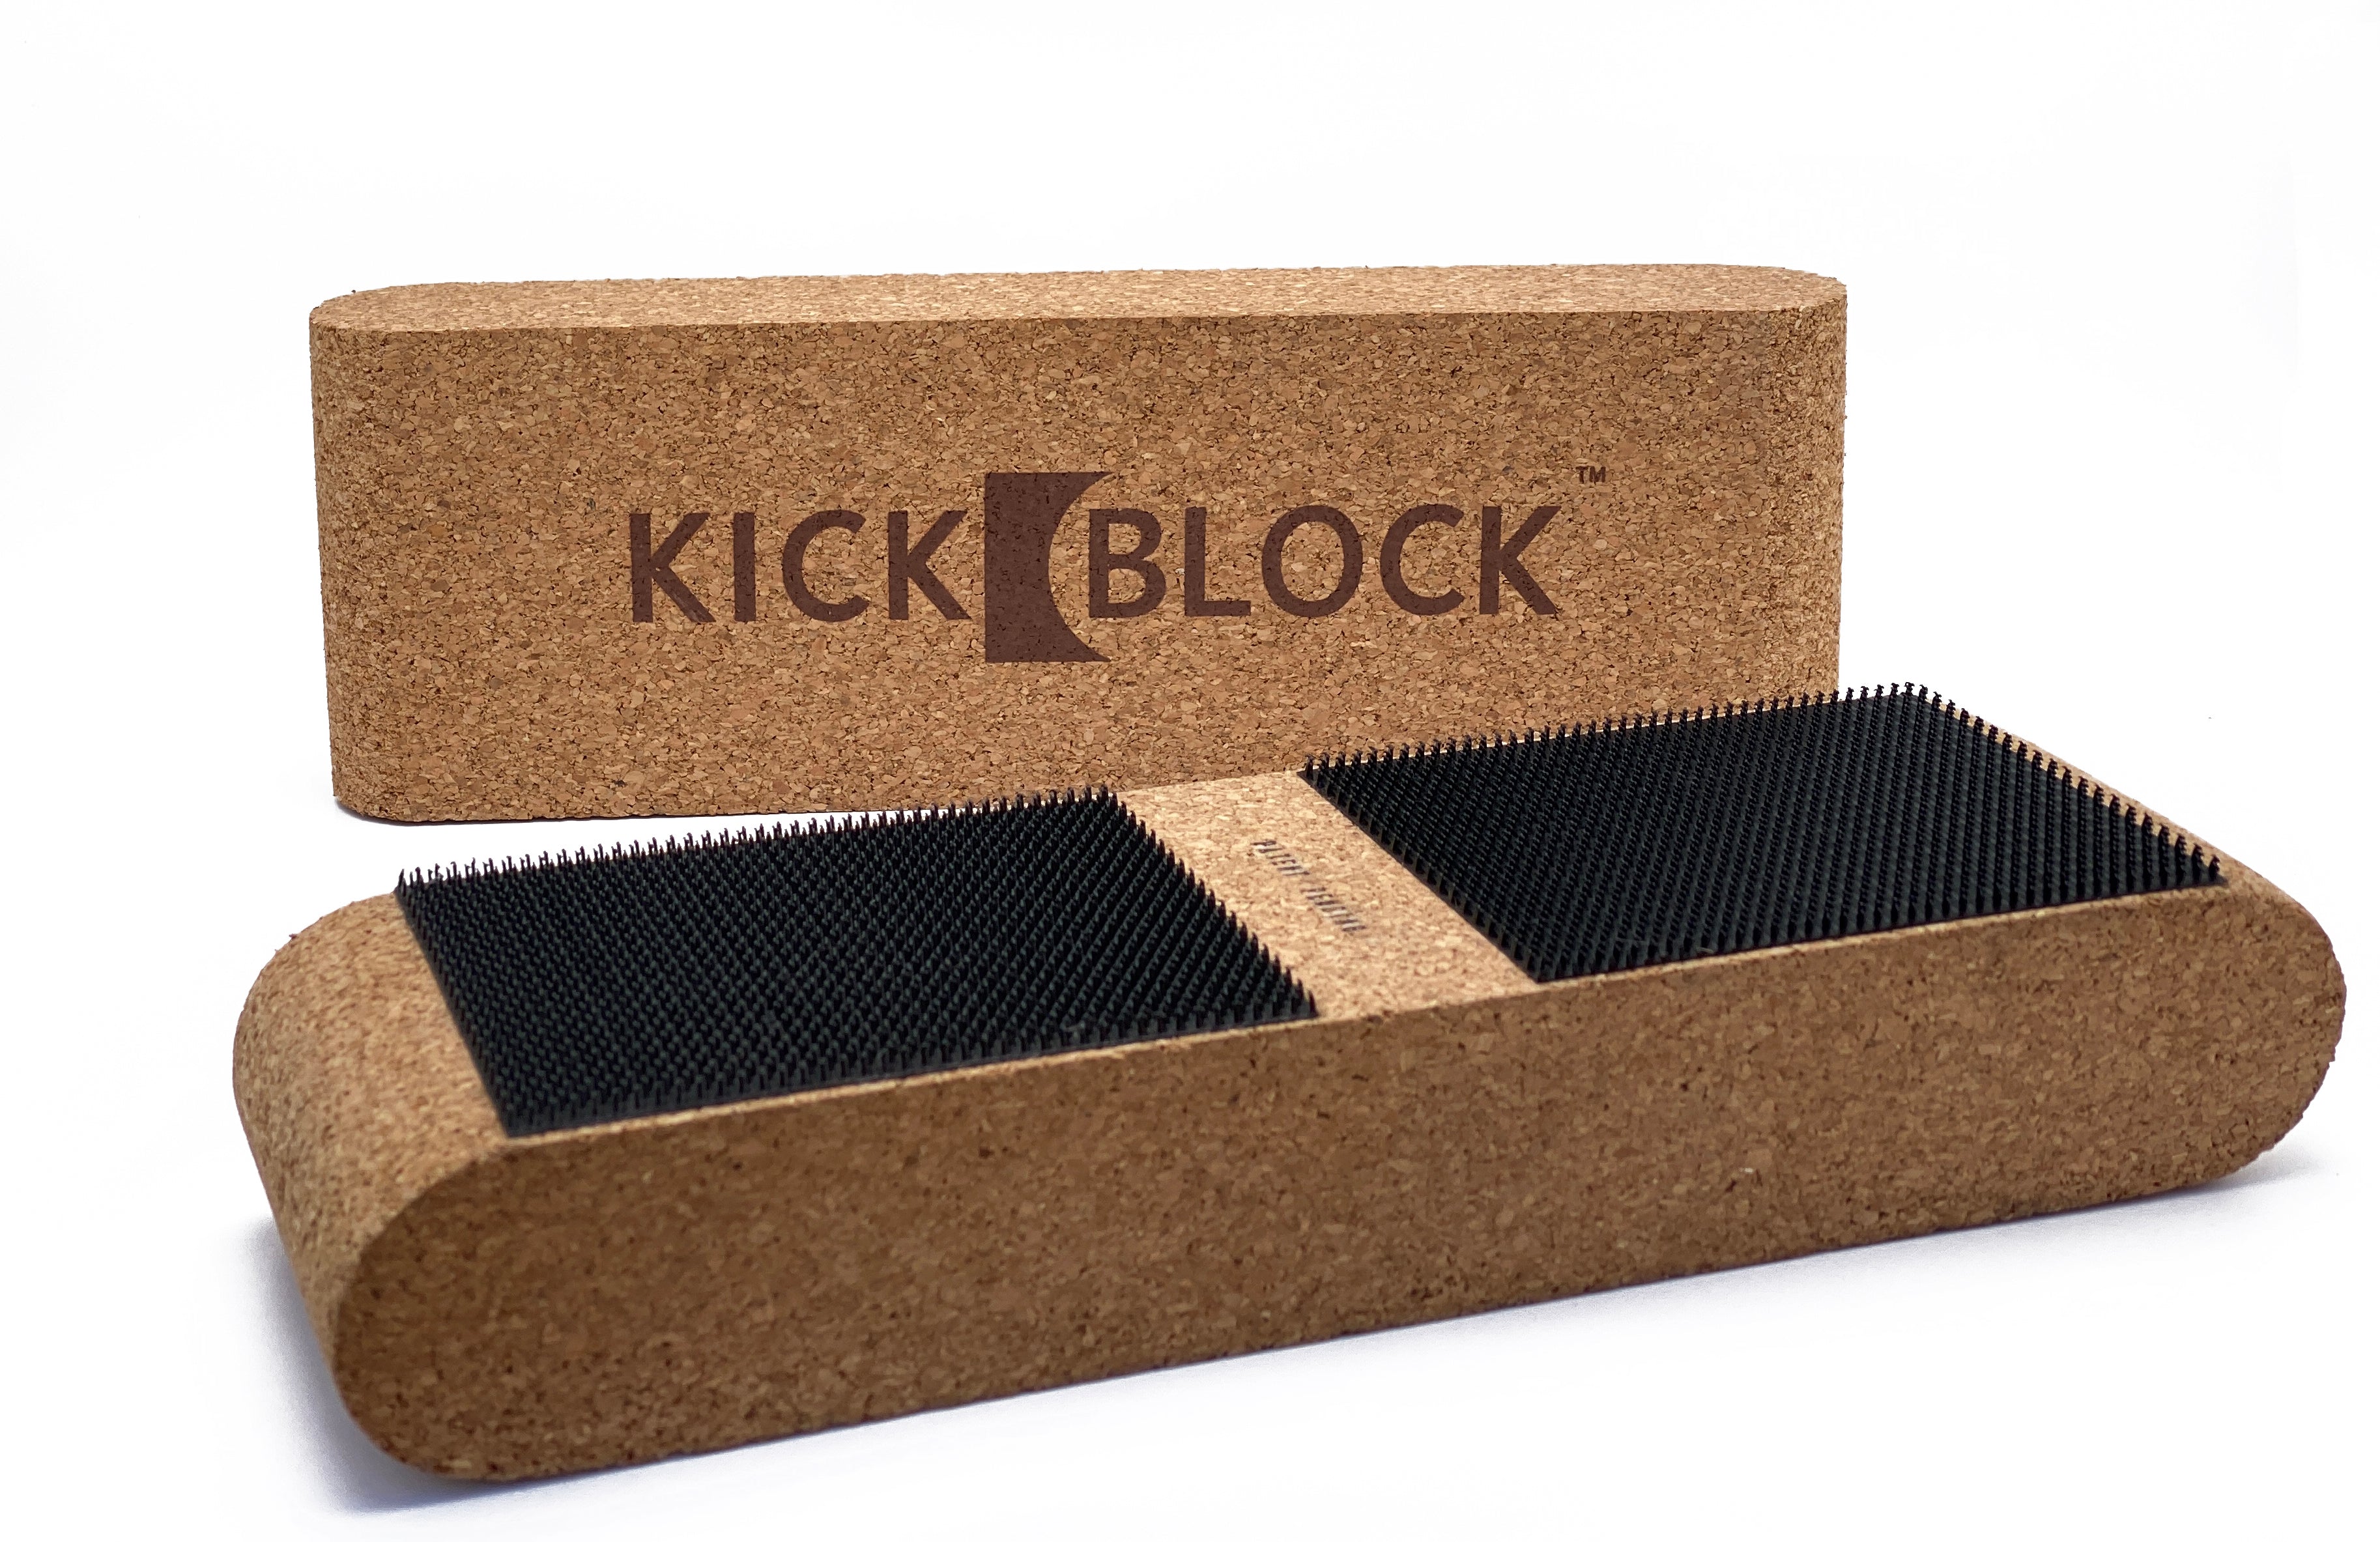 KickBlock Drum Rug - The Ultimate Drumming Surface – KickBlock Products